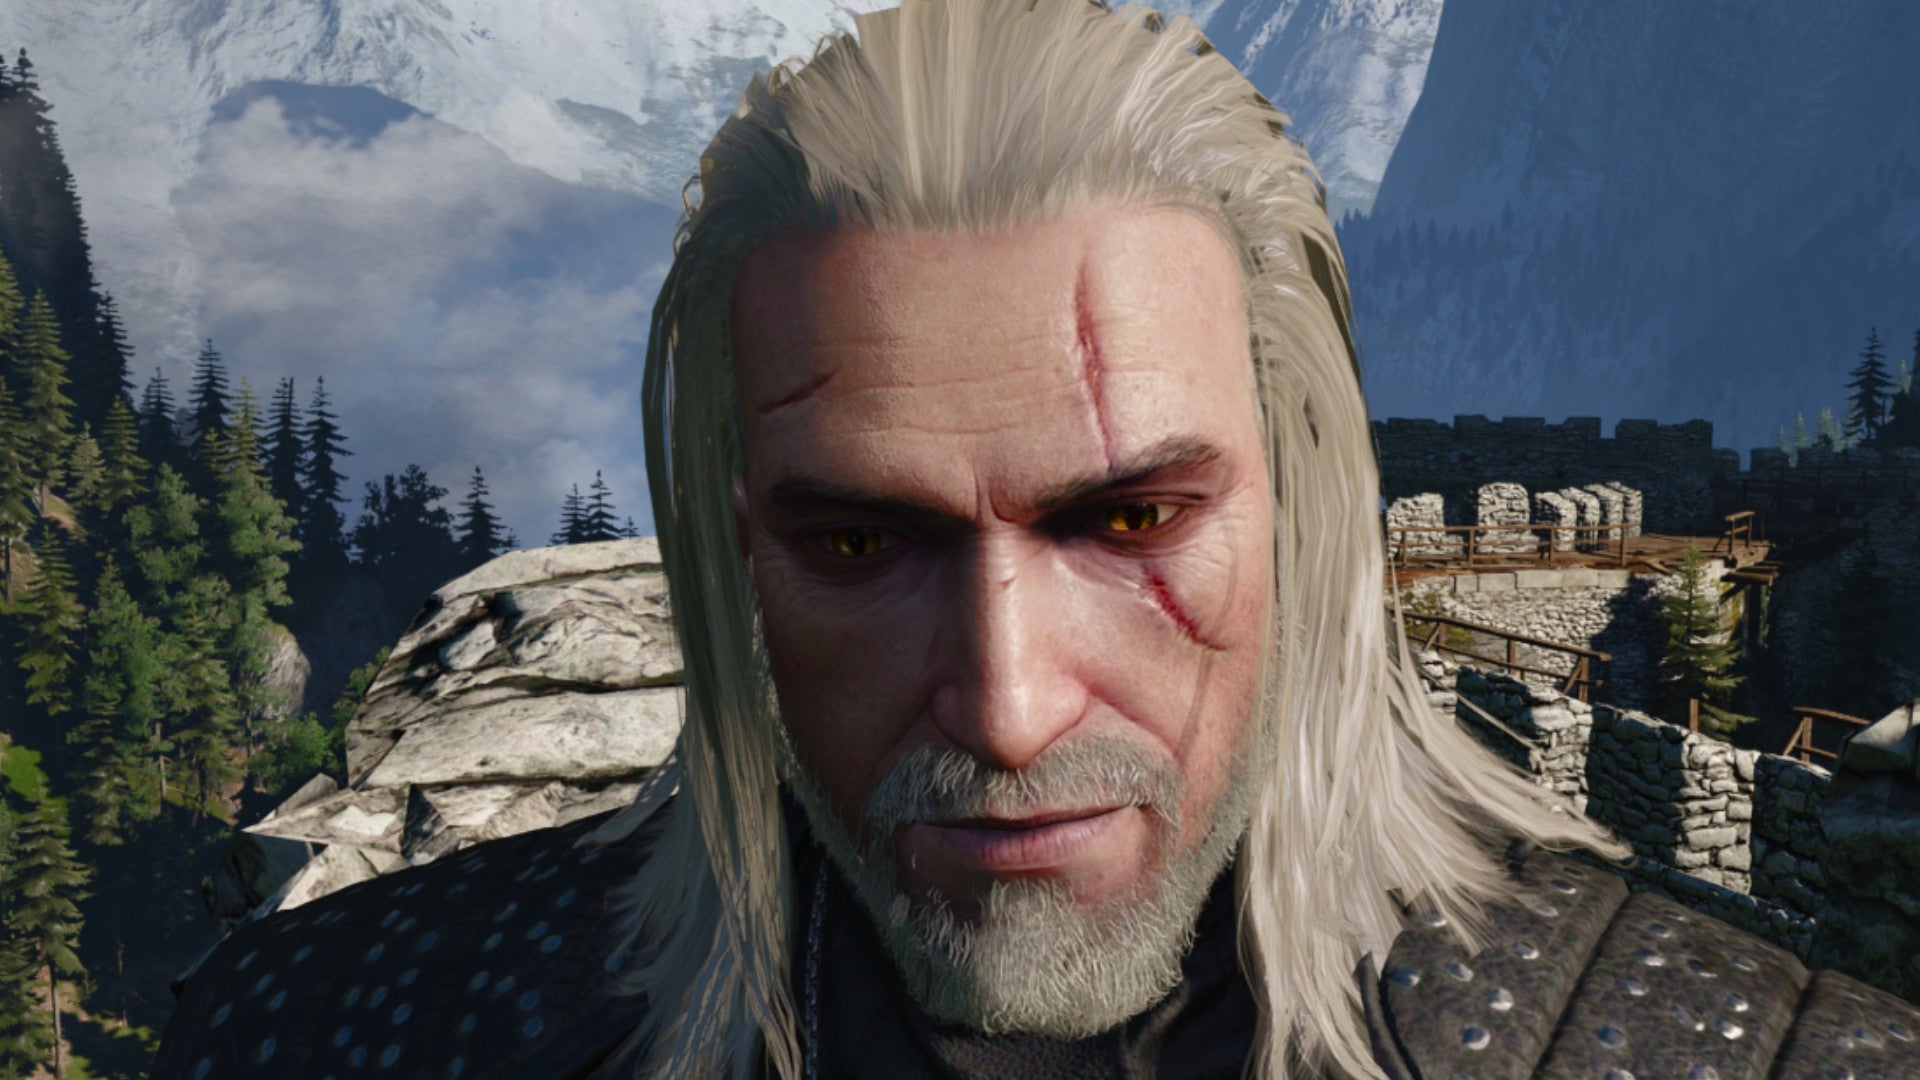 Captura de pantalla de Witcher 3 que muestra el corte de pelo largo y suelto de Geralt desde el frente.